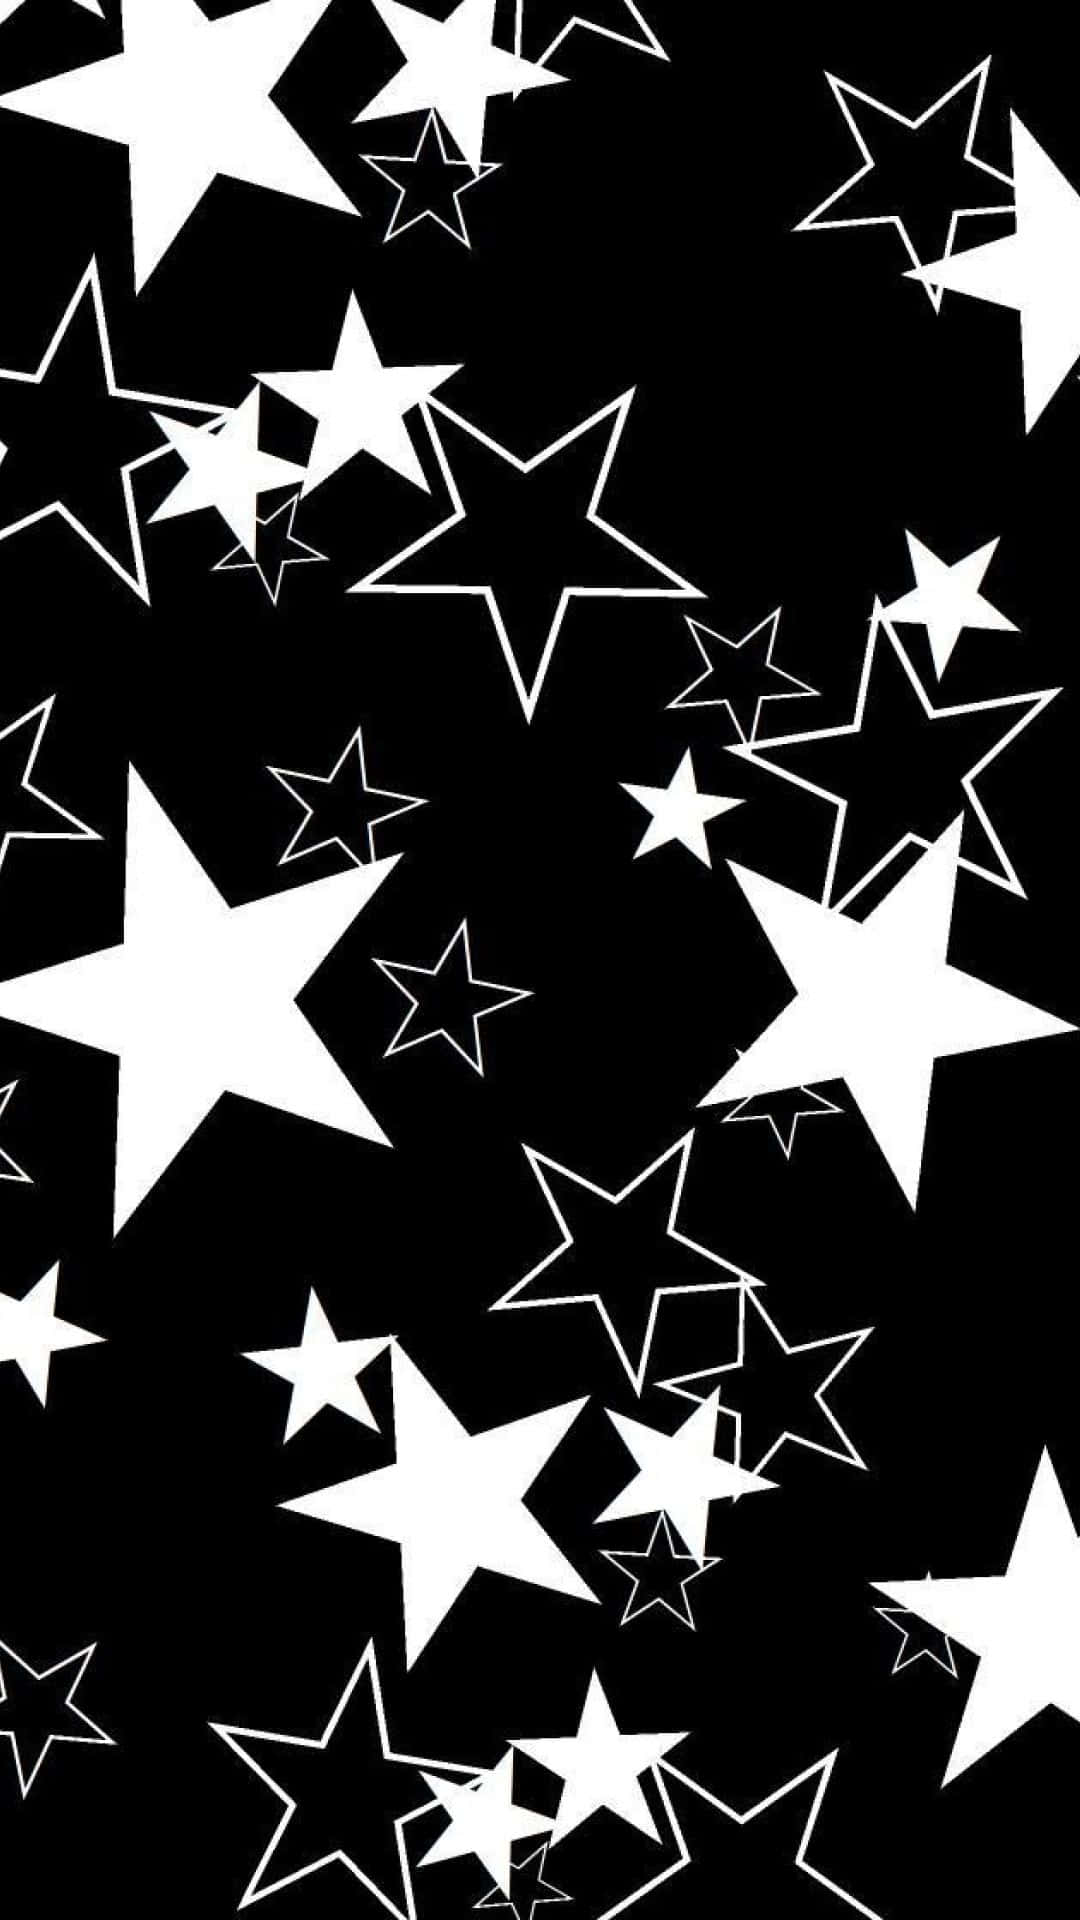 Blackwhite stars wallpaper  Star wallpaper Black and white stars Hippie  wallpaper